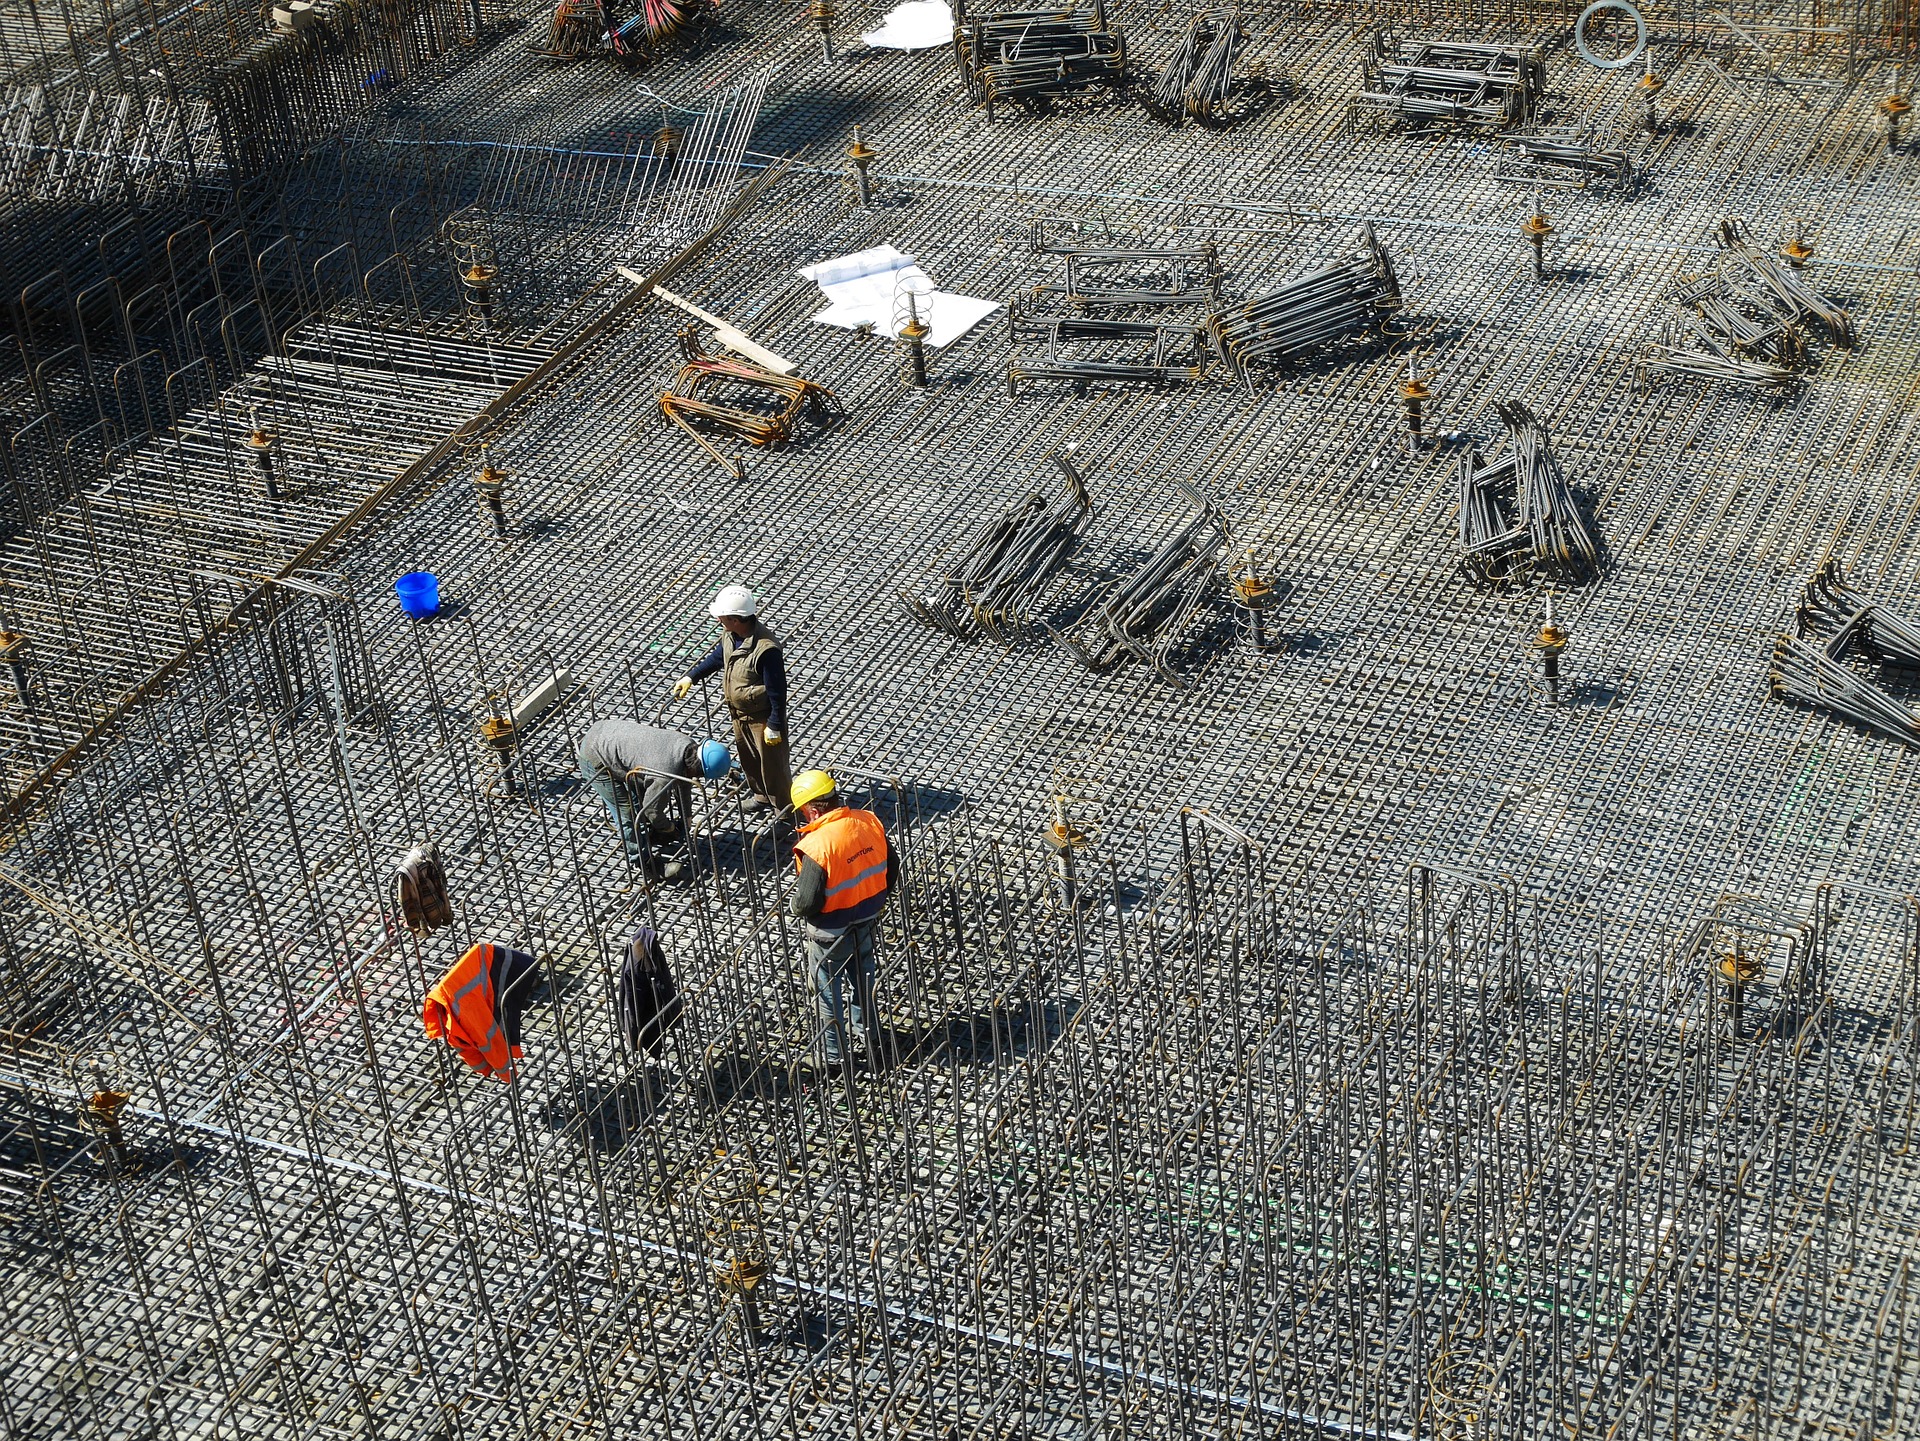 Νίκας: Αναστολή έκδοσης οικοδομικών αδειών για ανέγερση κτηρίων και εκτέλεση οικοδομικών εργασιών